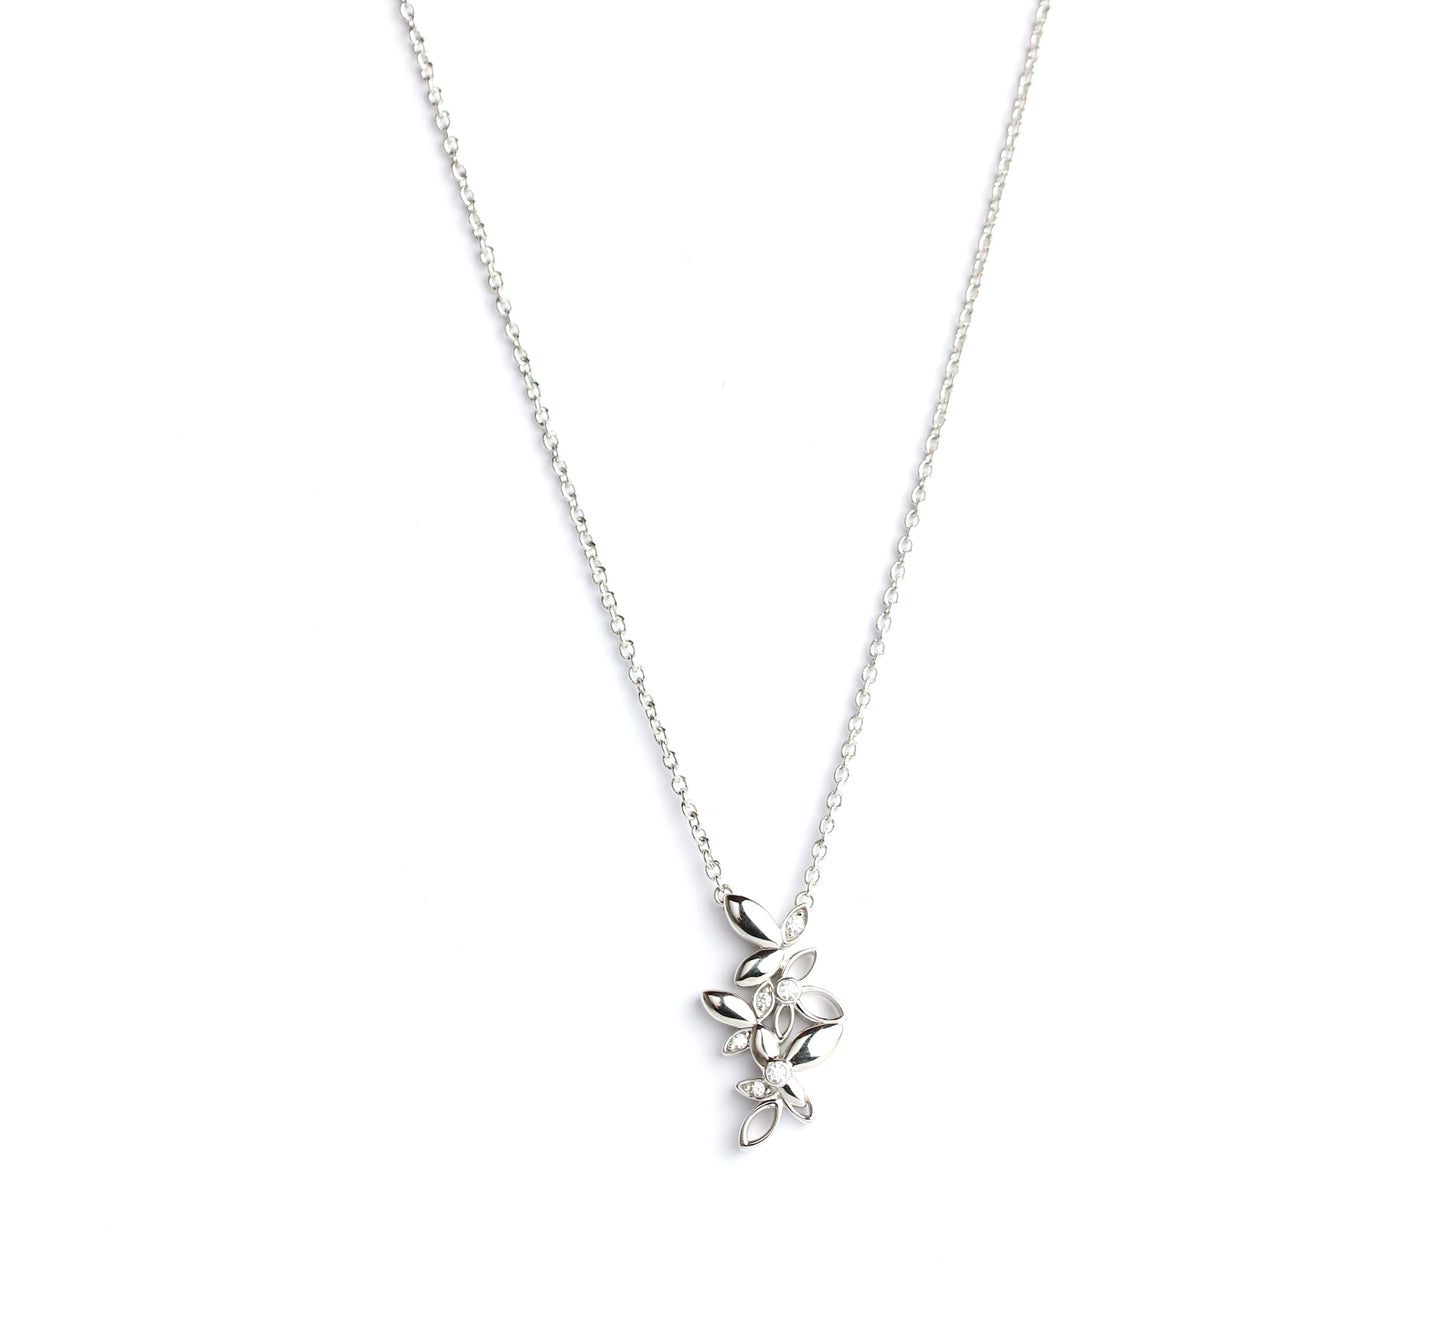 WILHELM MÜLLER - Halskette in Silber mit Blüten und Zirkonia